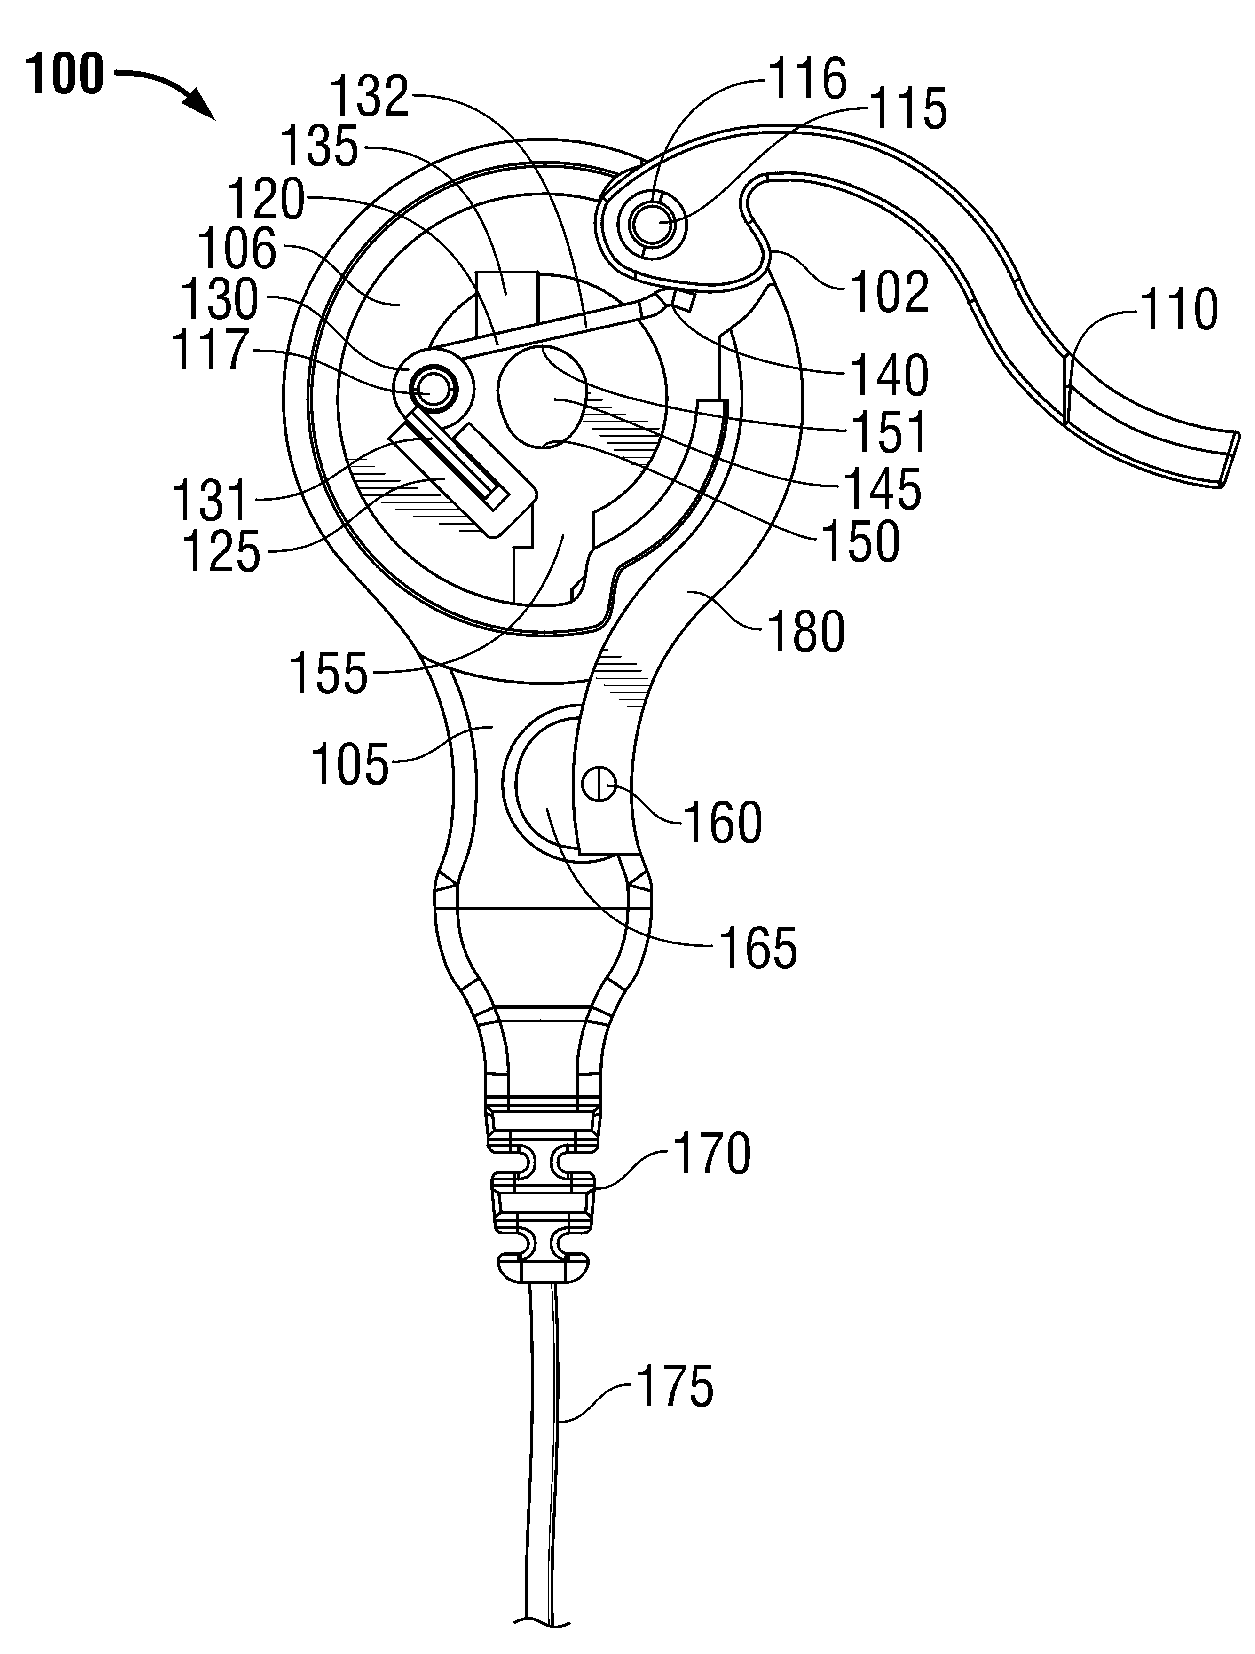 ECG Electrode Connector